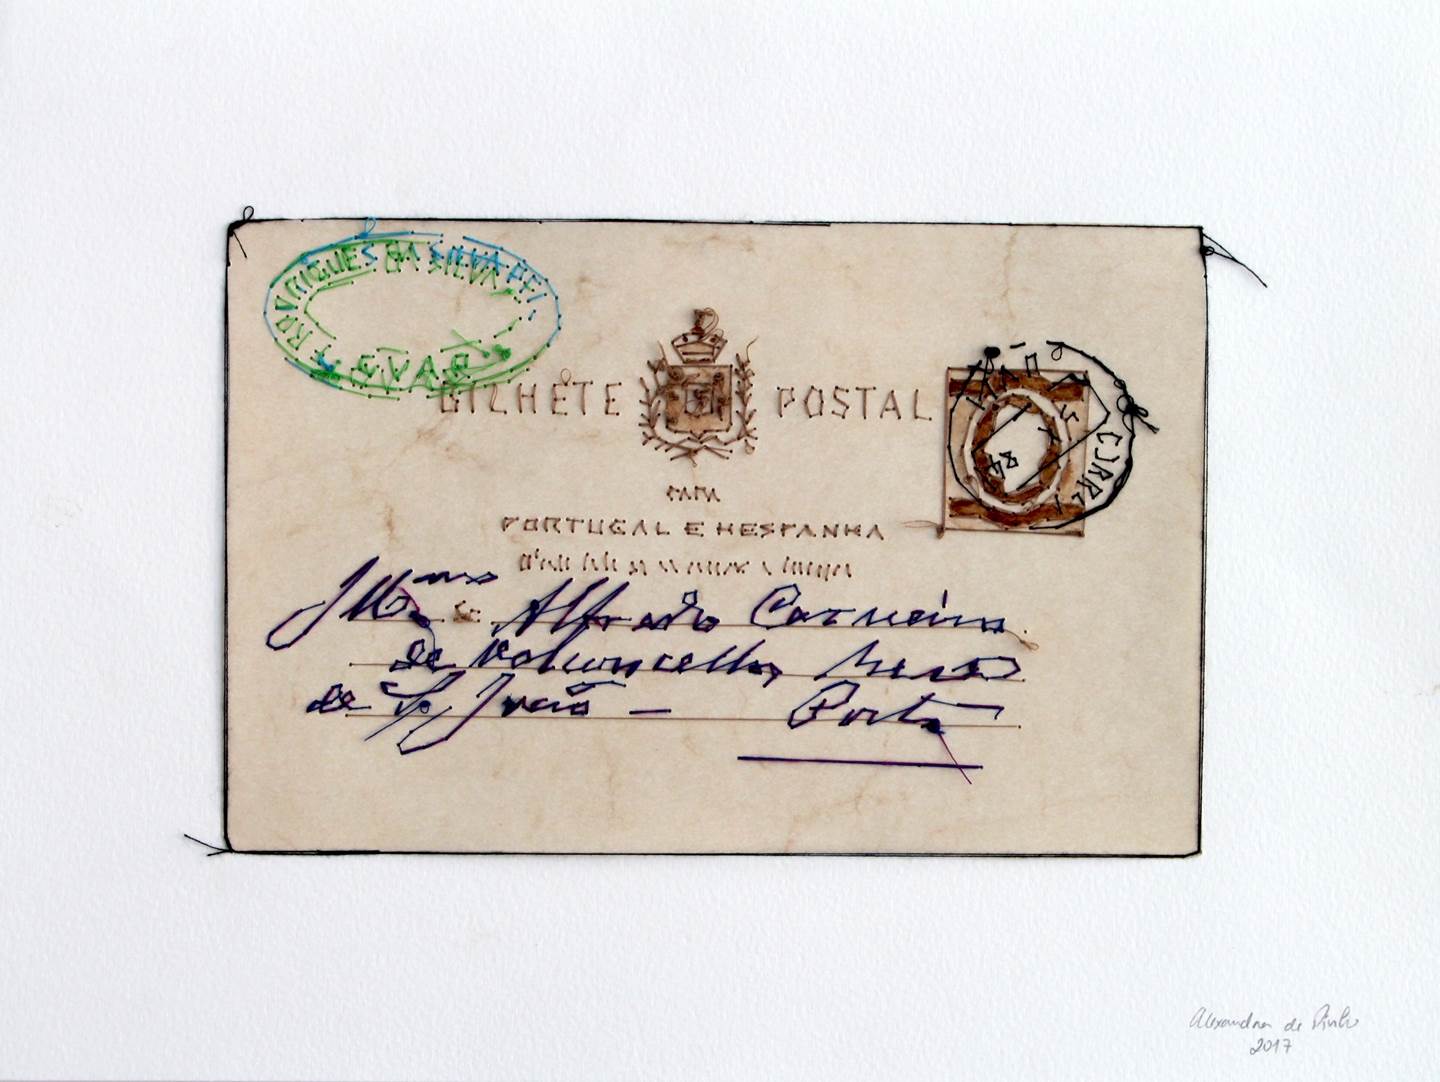 Bilhete Postal, original   Pintura de Alexandra de Pinho